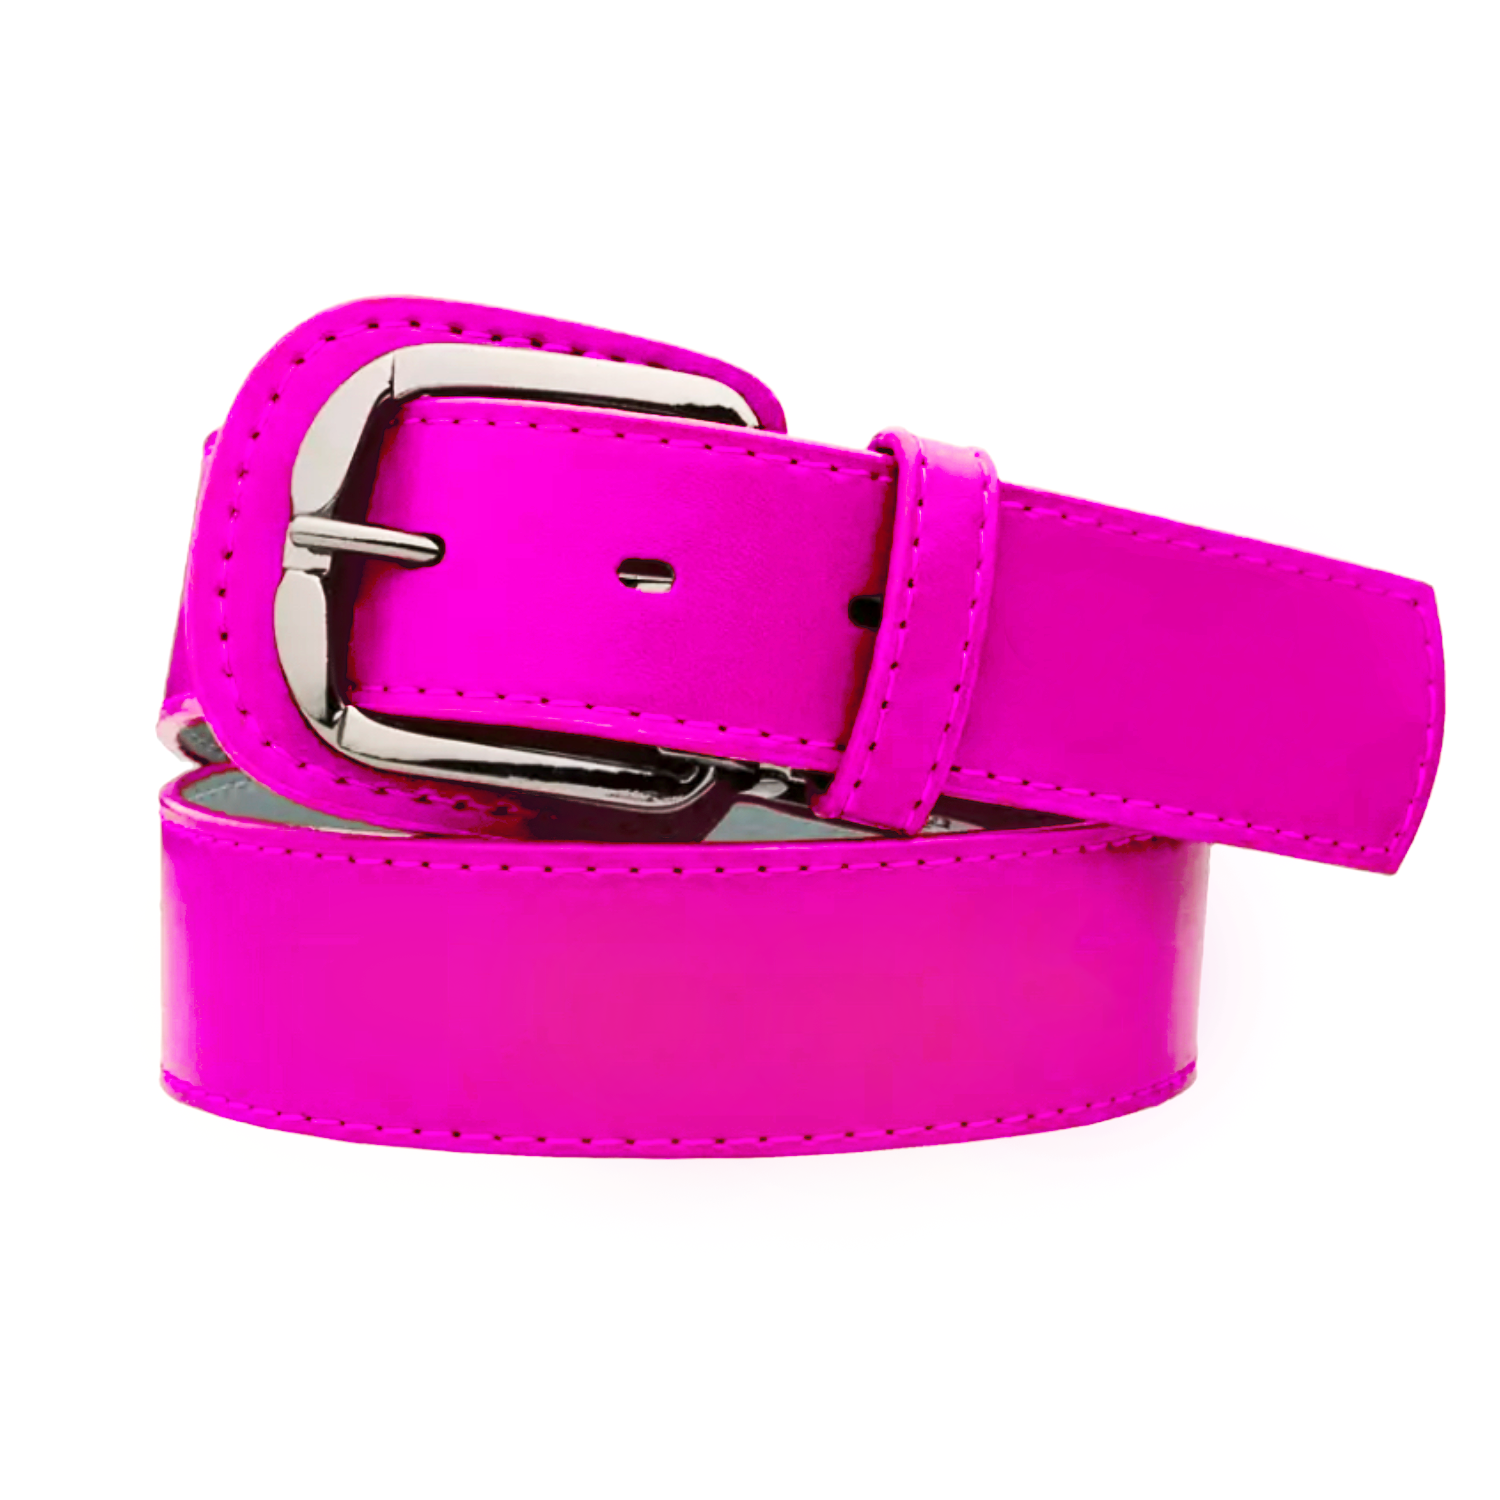 Standard Pink Baller Leather Belt